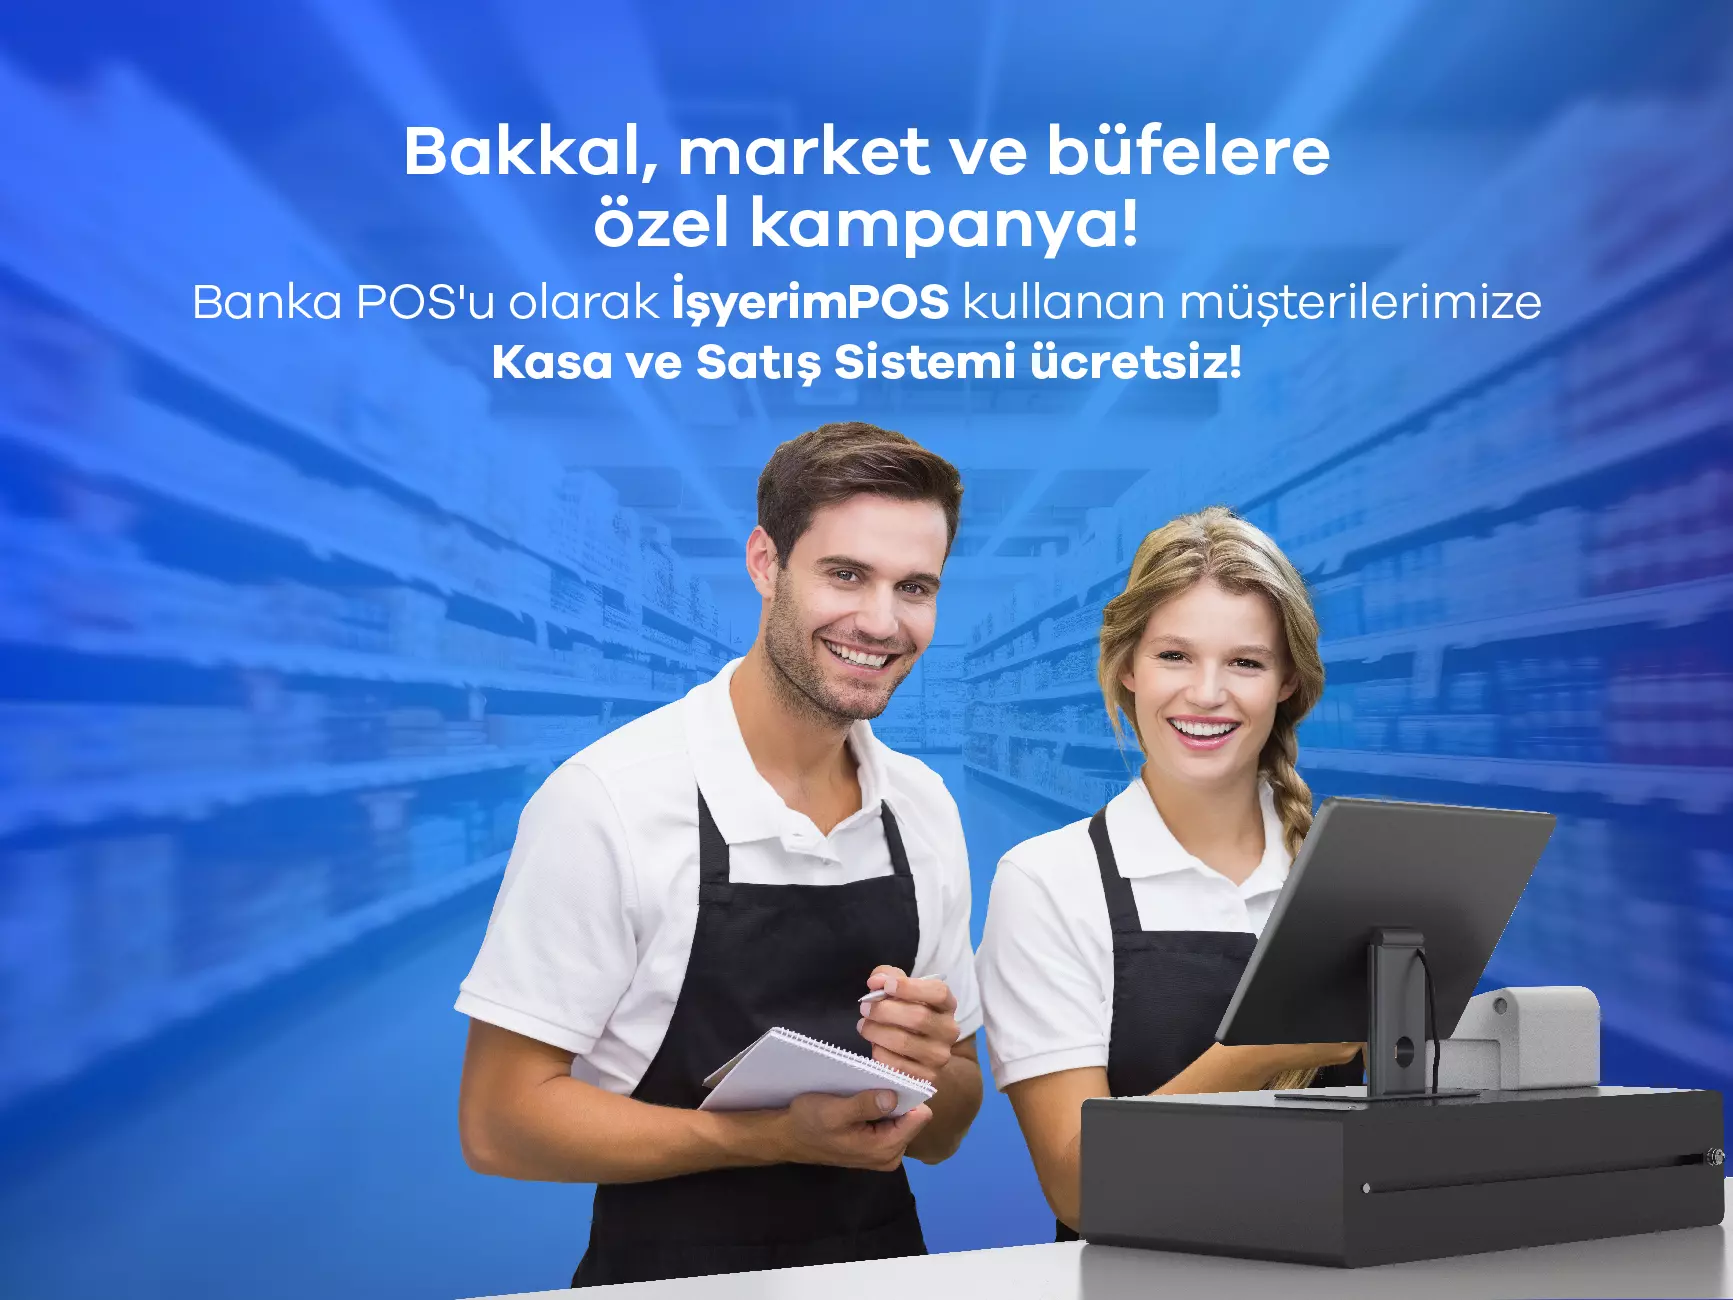 İşyerimPOS ile Bakkal, Market ve Büfelere Kasa ve Satış Sistemi Ücretsiz!